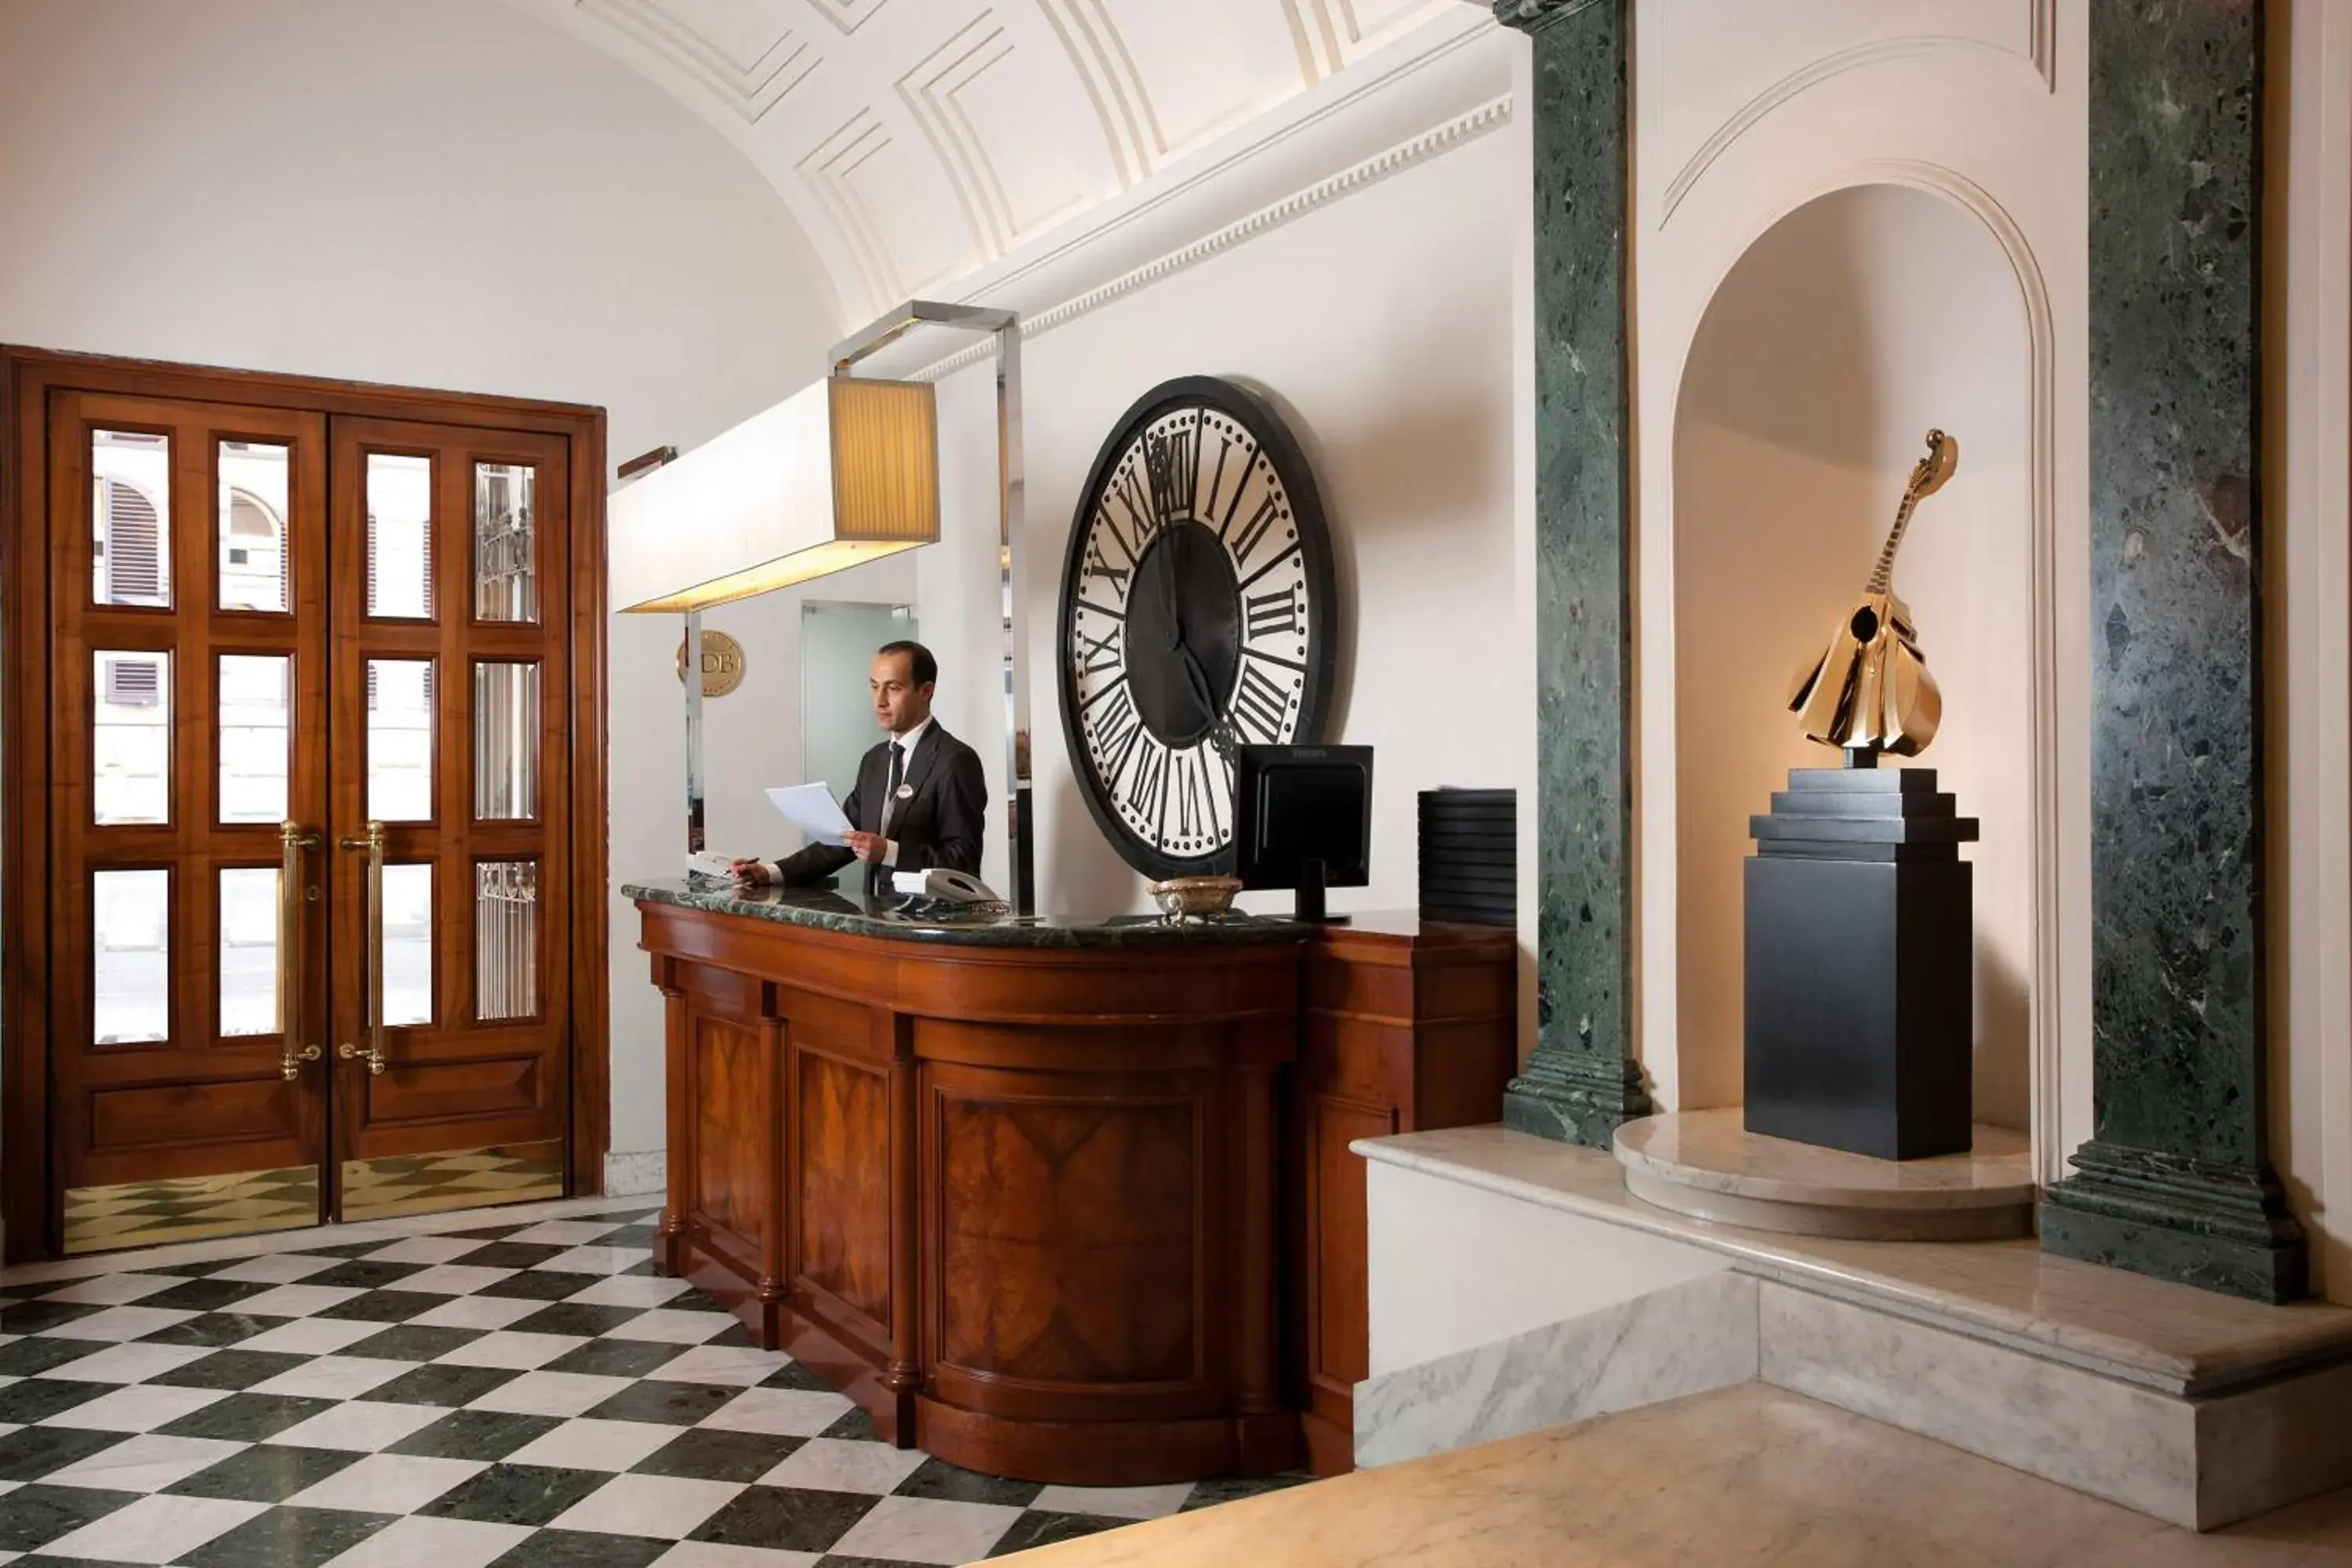 Lobby or reception, Lobby/Reception in Hotel Mascagni